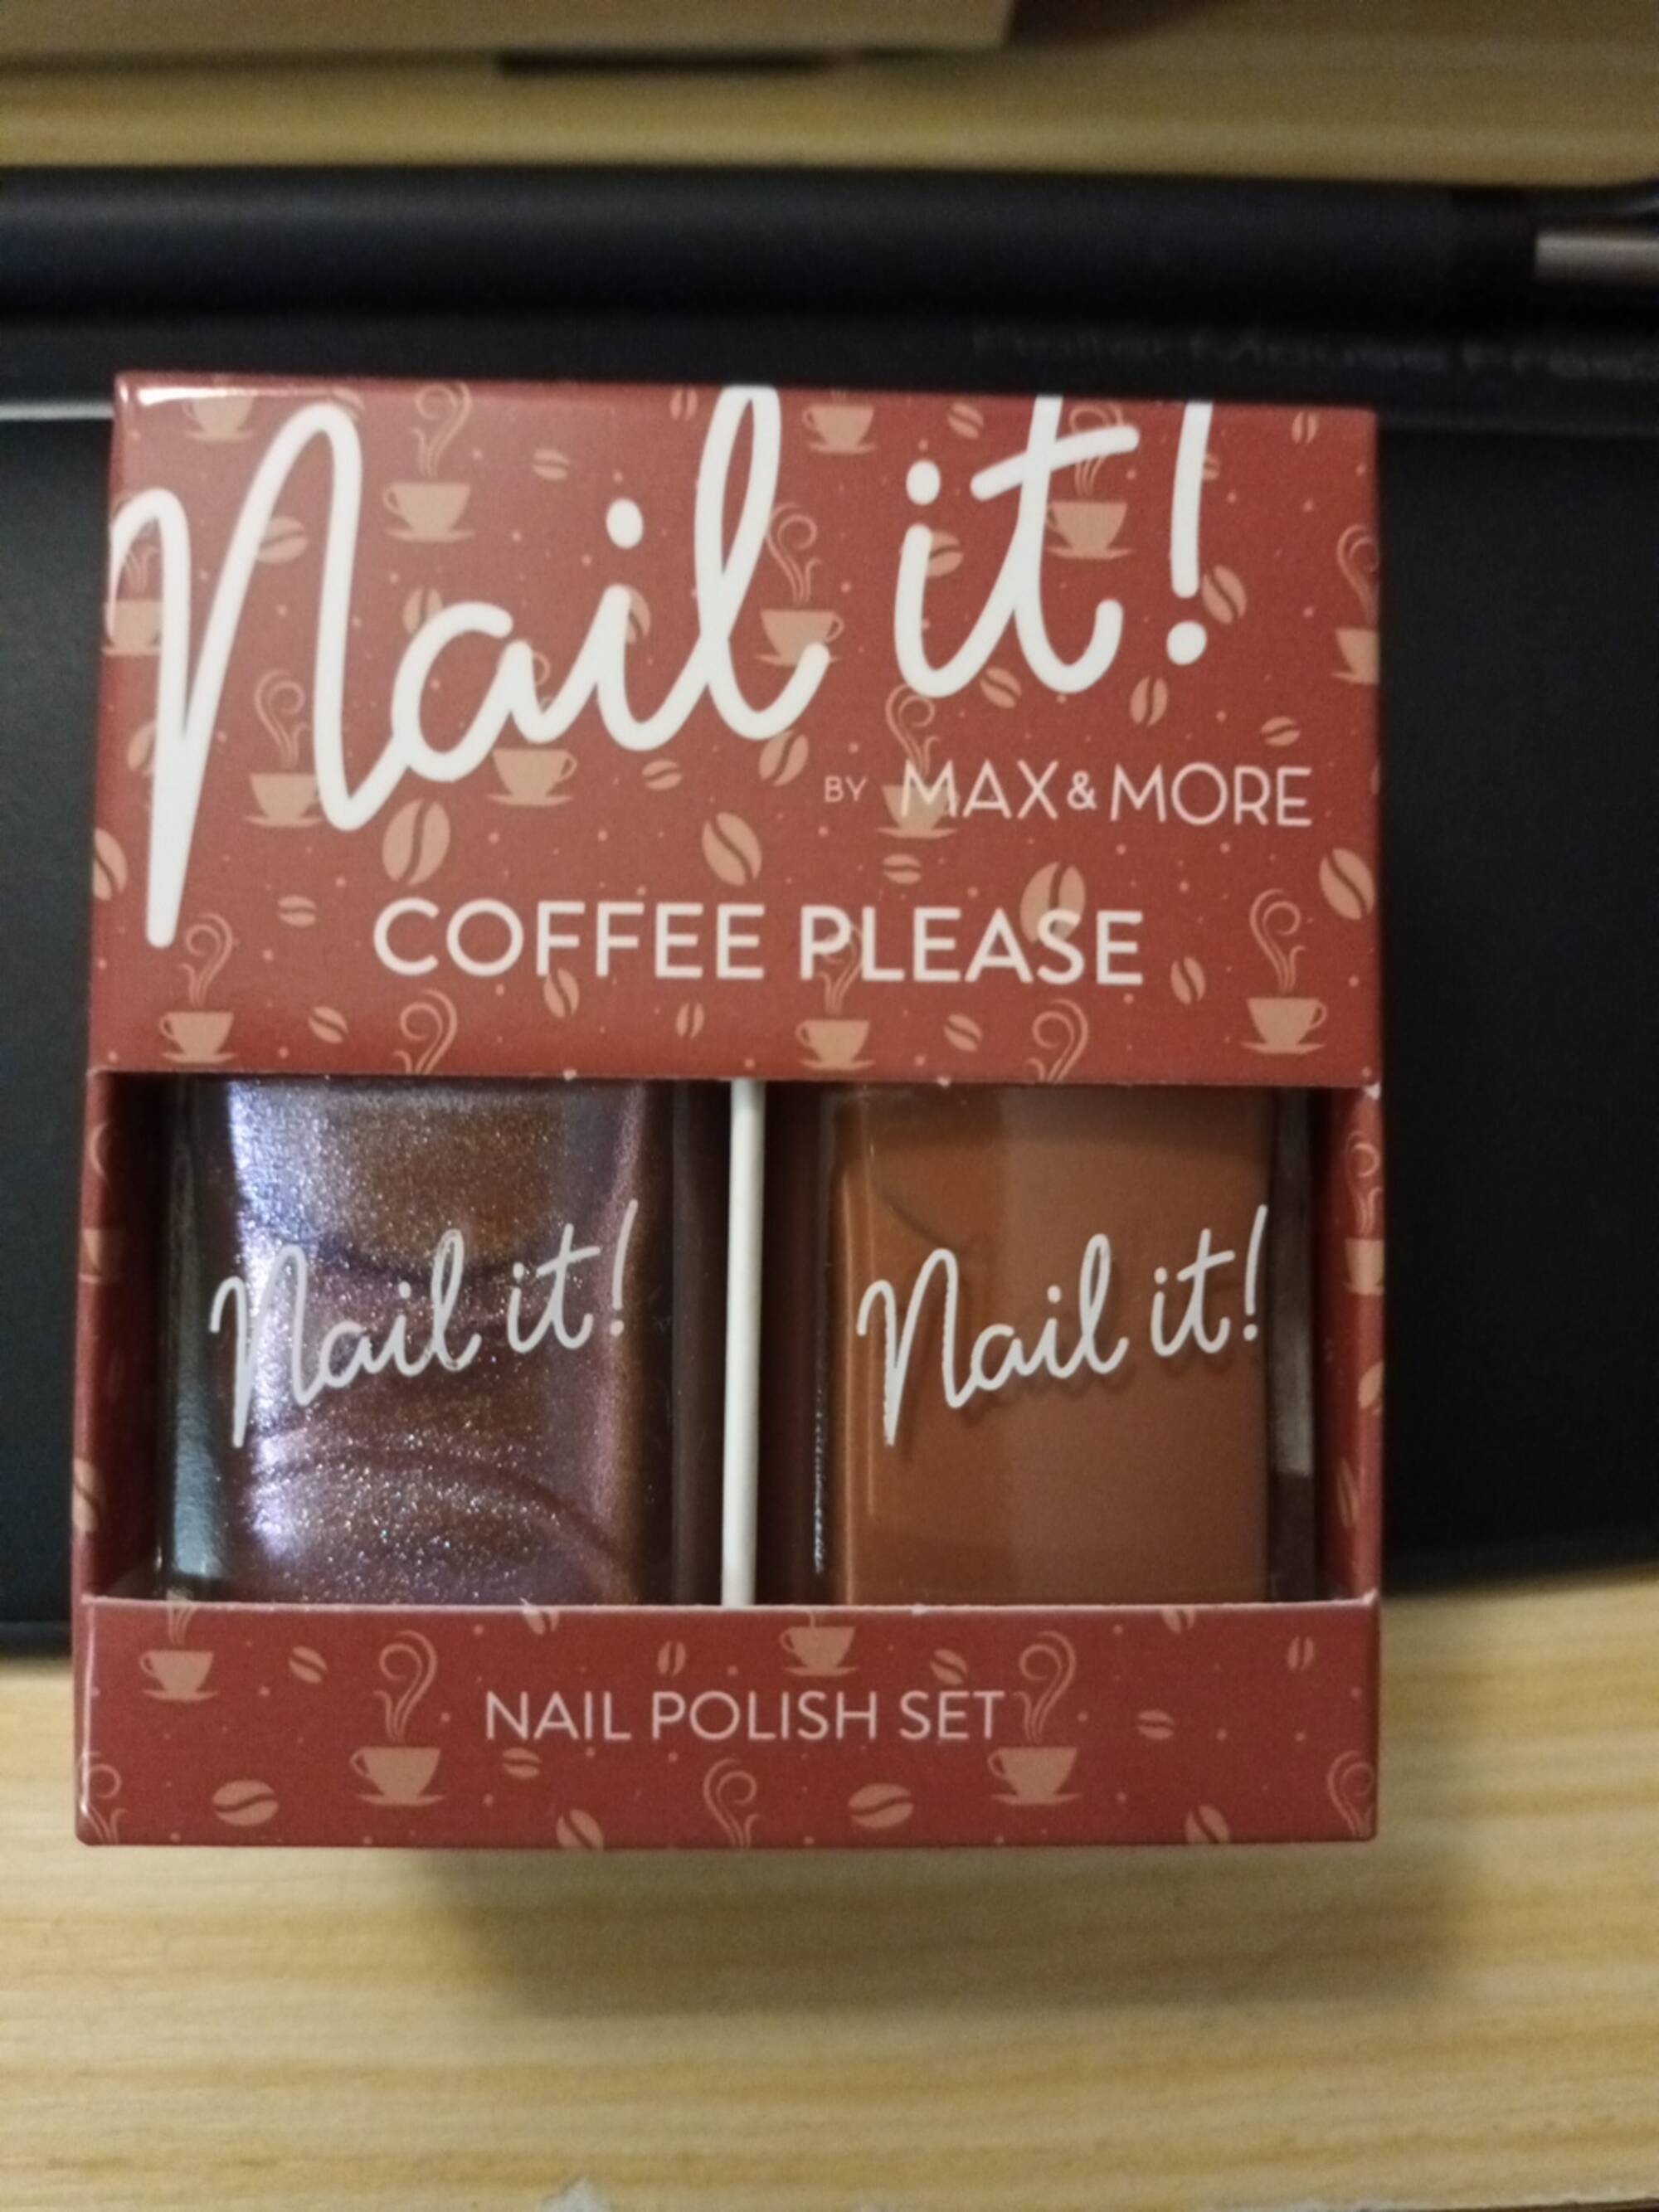 MAX AND MORE - Nail it ! coffee please - Nail polish set